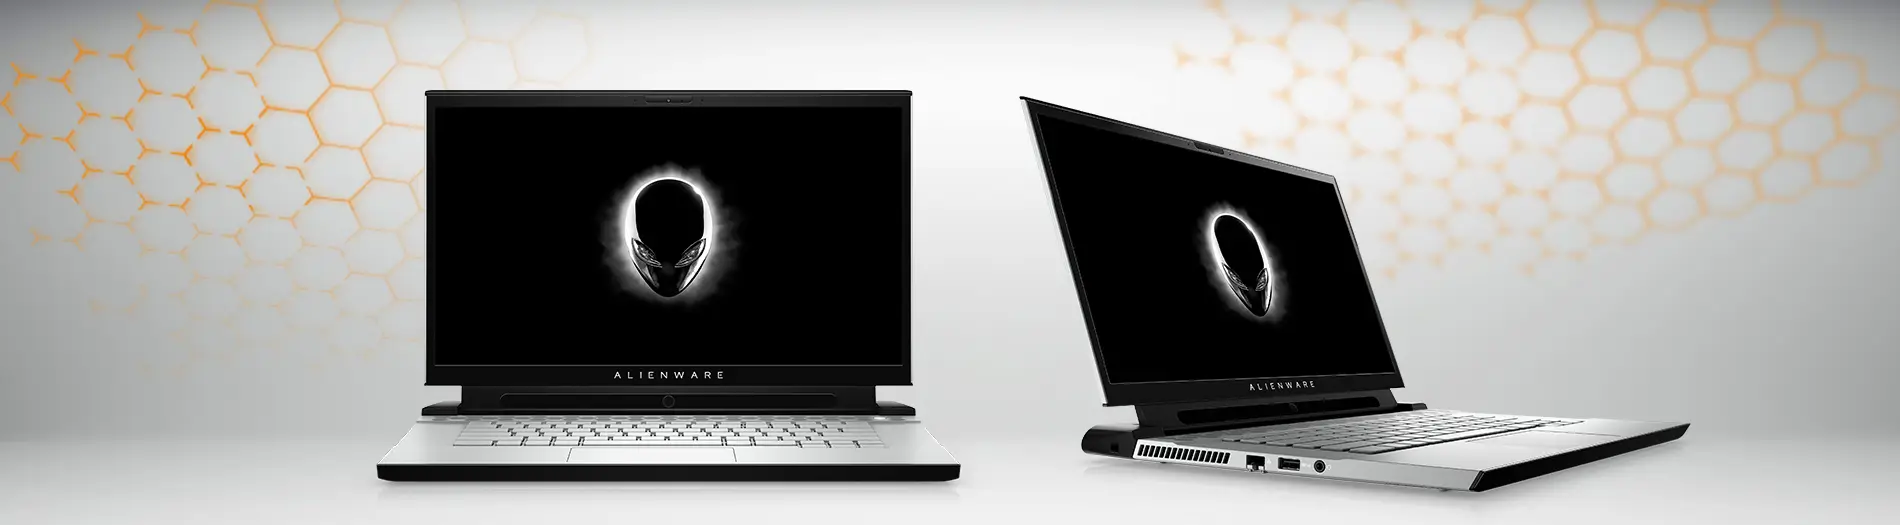 Alienware : un nouvel écran extraterrestre pour profiter au